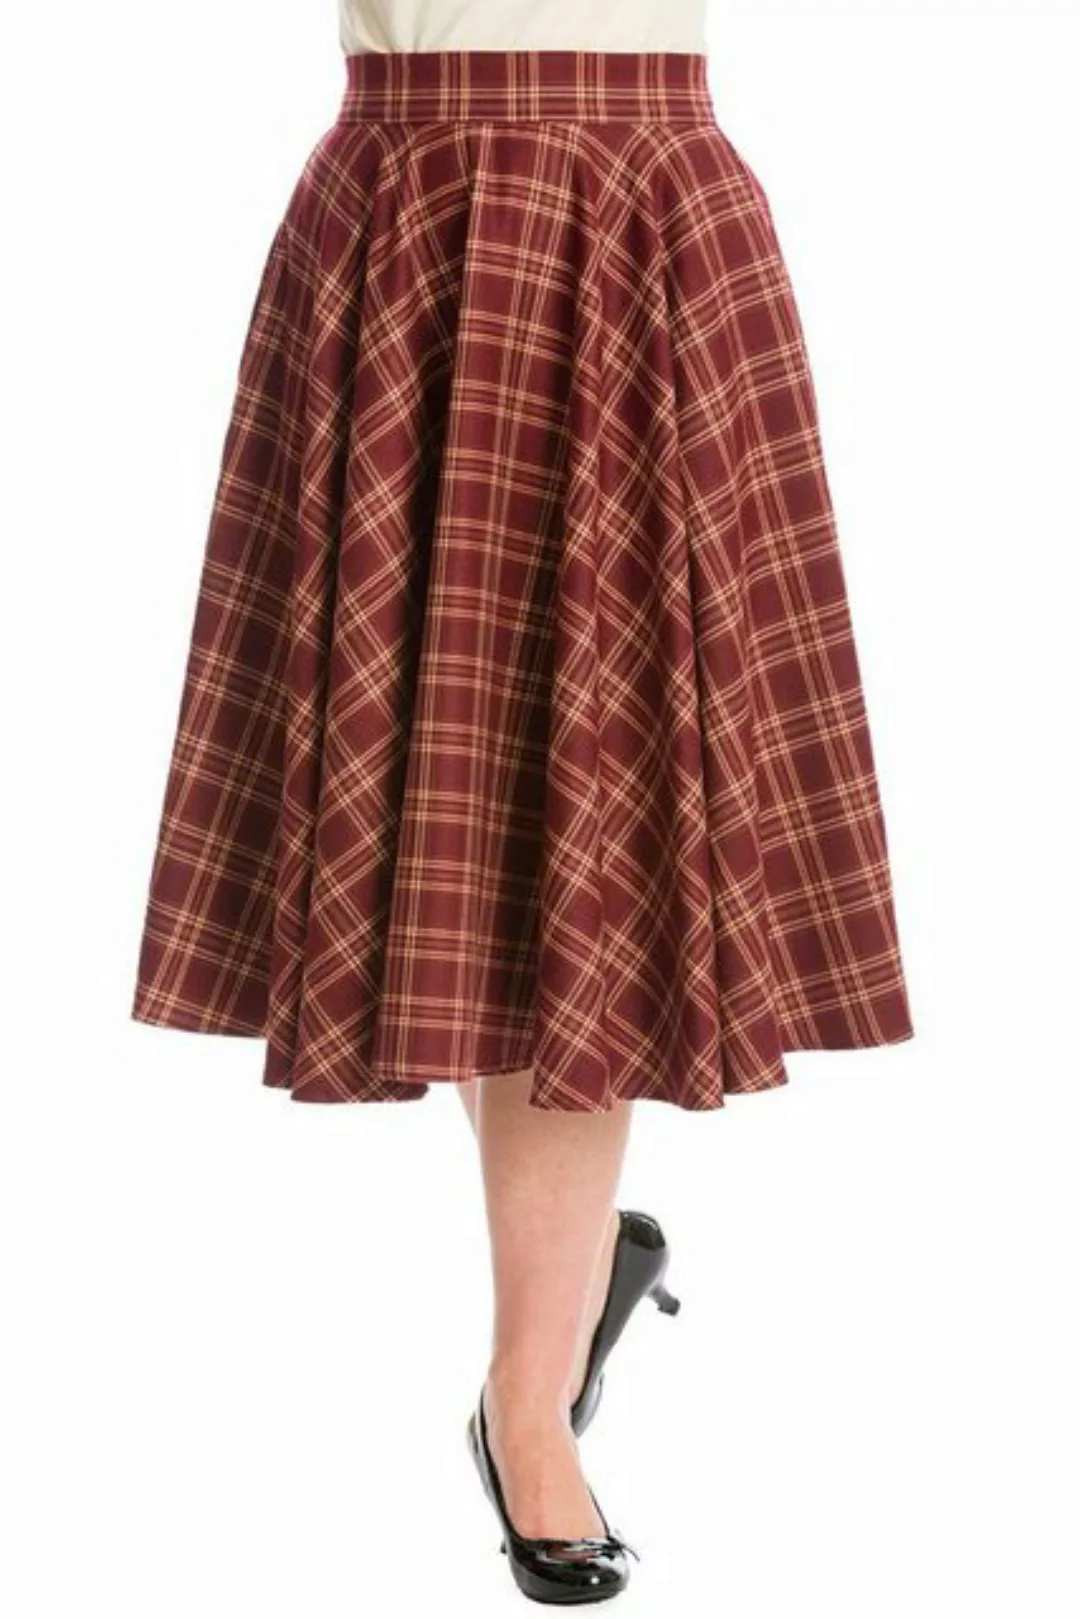 Banned A-Linien-Rock Adore Her Burgunder Kariert Retro Vintage Swing Skirt günstig online kaufen